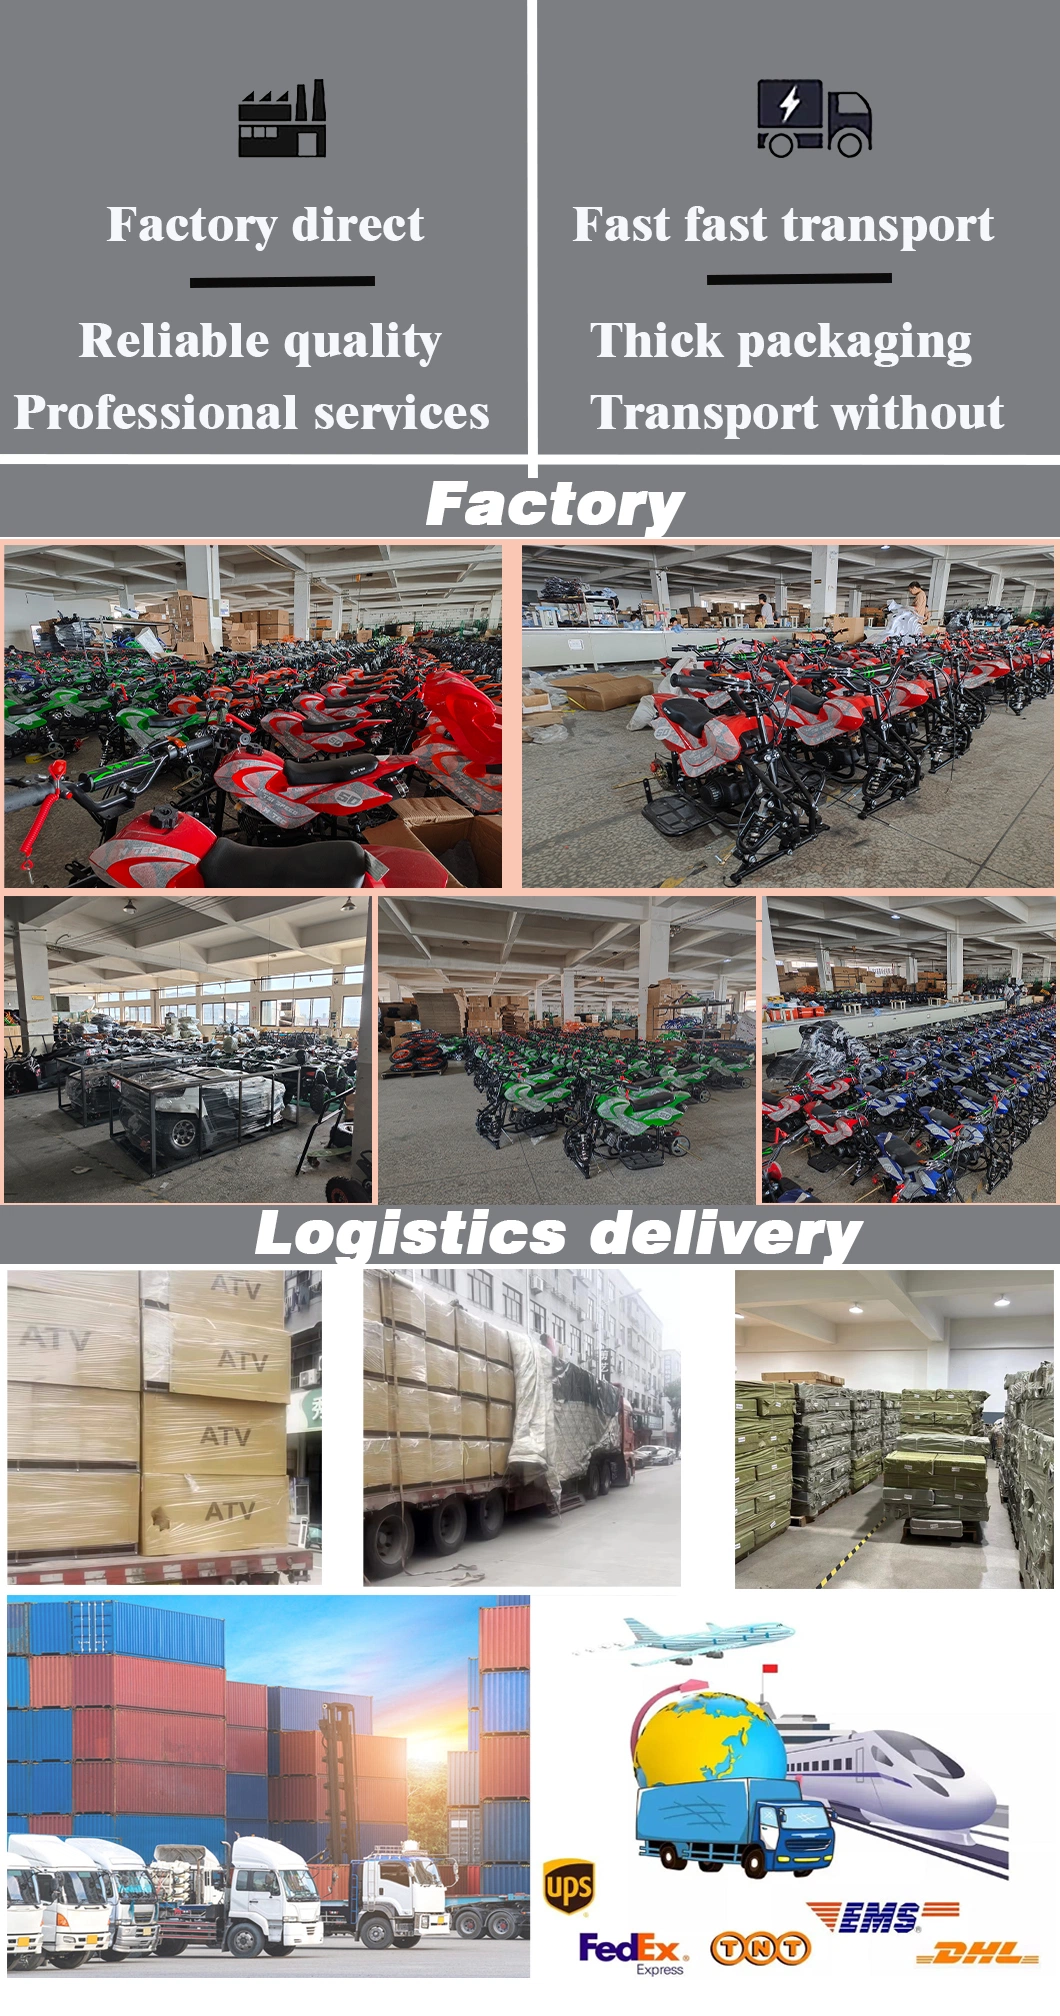 Agriculture Adult ATV Agriculture 250cc 200cc 150cc 1.5m Cargo Farm ATV